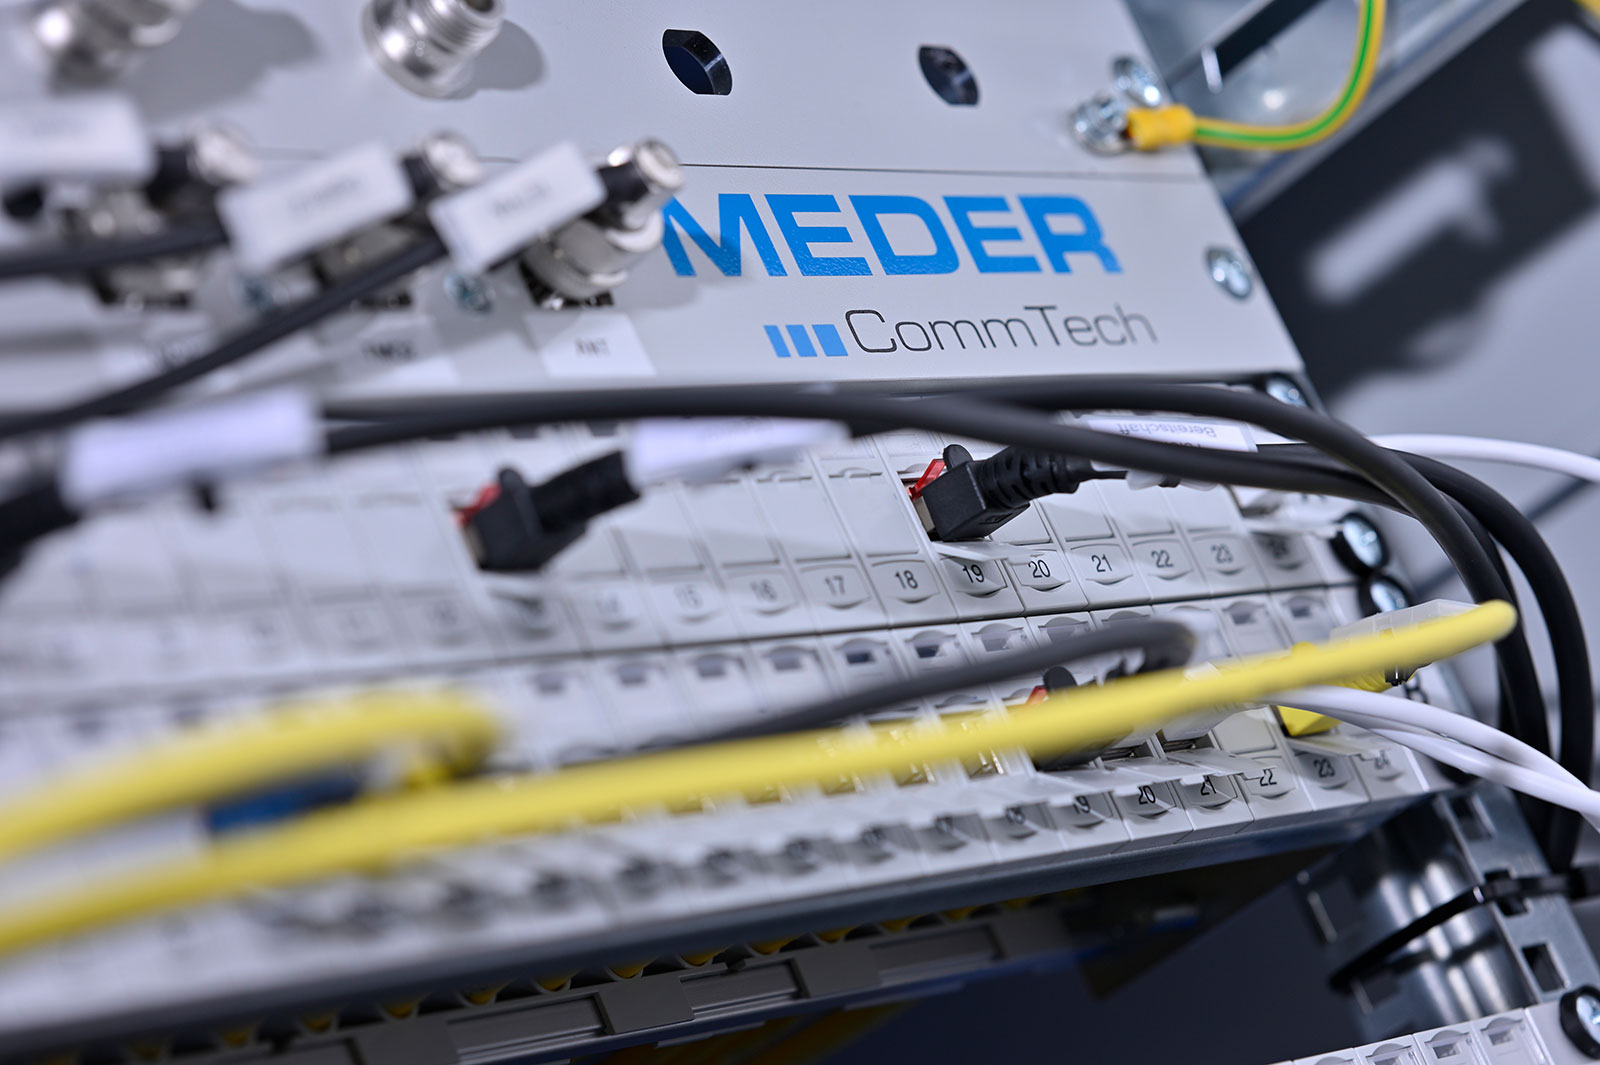 Profilbild der MEDER CommTech GmbH in Singen: Zu sehen ist ein Steckfeld mit mehreren Kabeln.